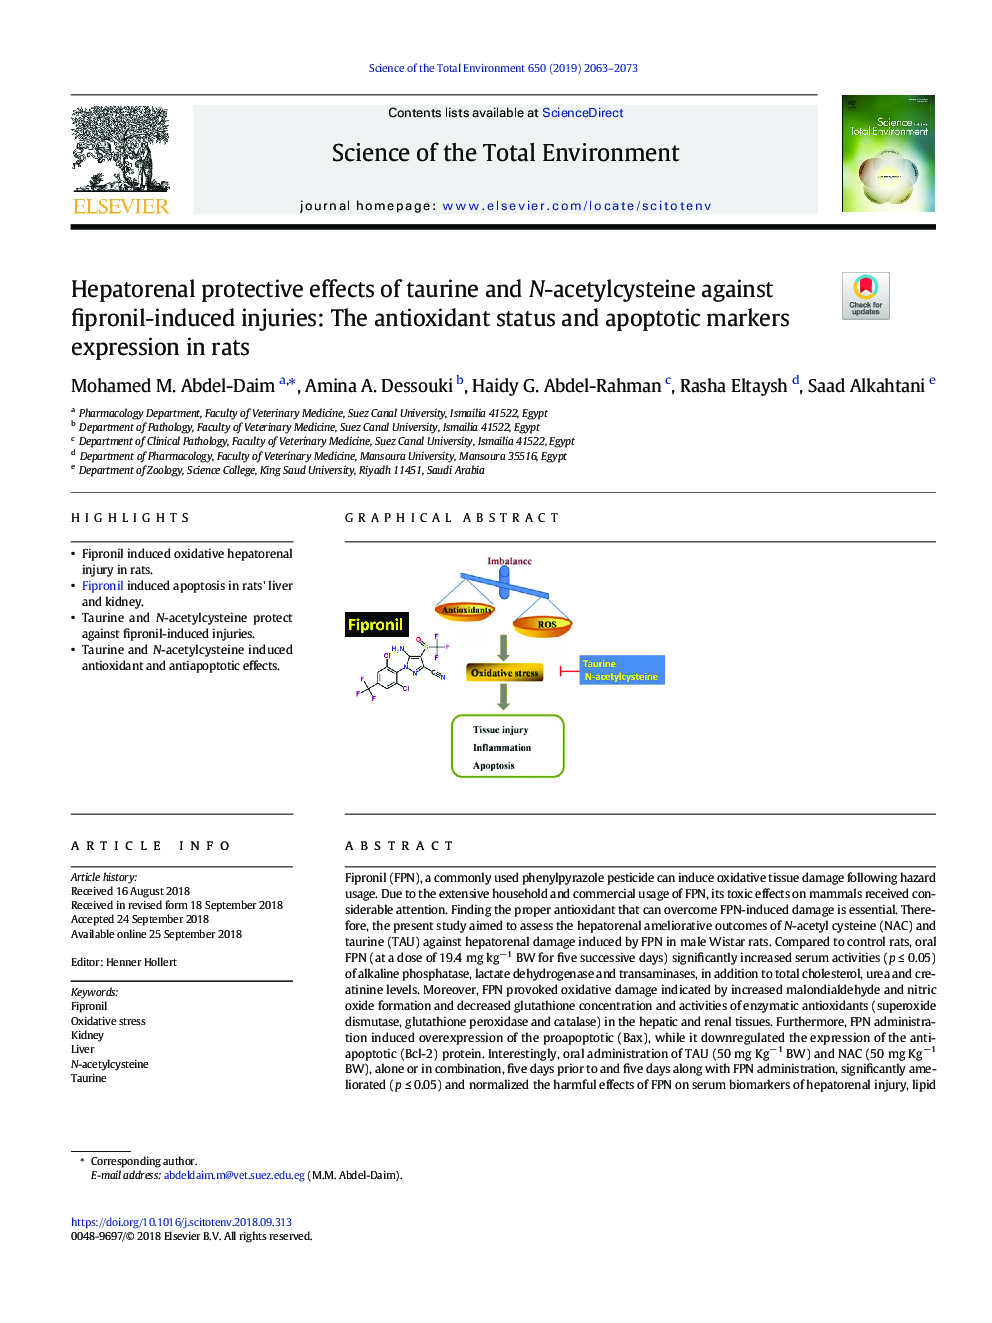 اثرات محافظتی هپاتوژنال تائورین و نیتستیل سیستئین در برابر جراحات ناشی از فیپرونیل: بیان وضعیت آنتی اکسیدانی و نشانگرهای آپوپتوتیک در موش صحرایی